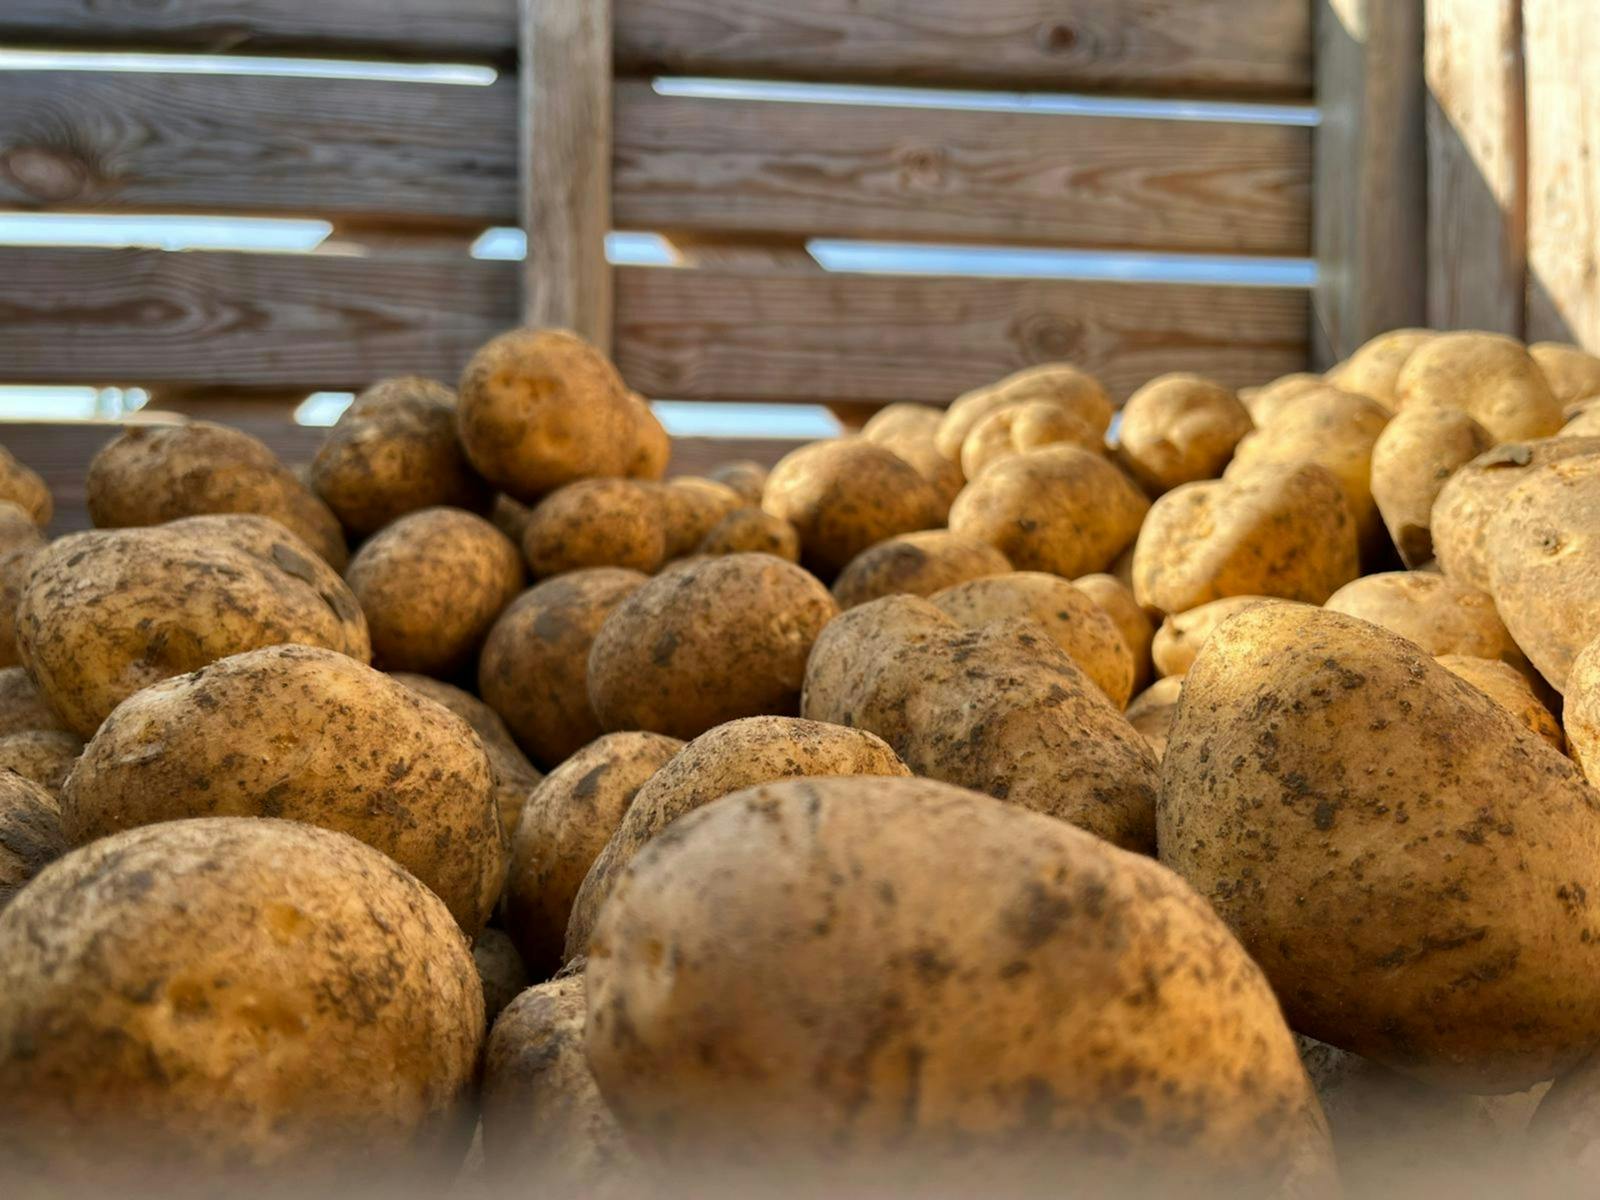 Pommes de terre farineuses 20kg, produit artisanal en vente directe en Suisse